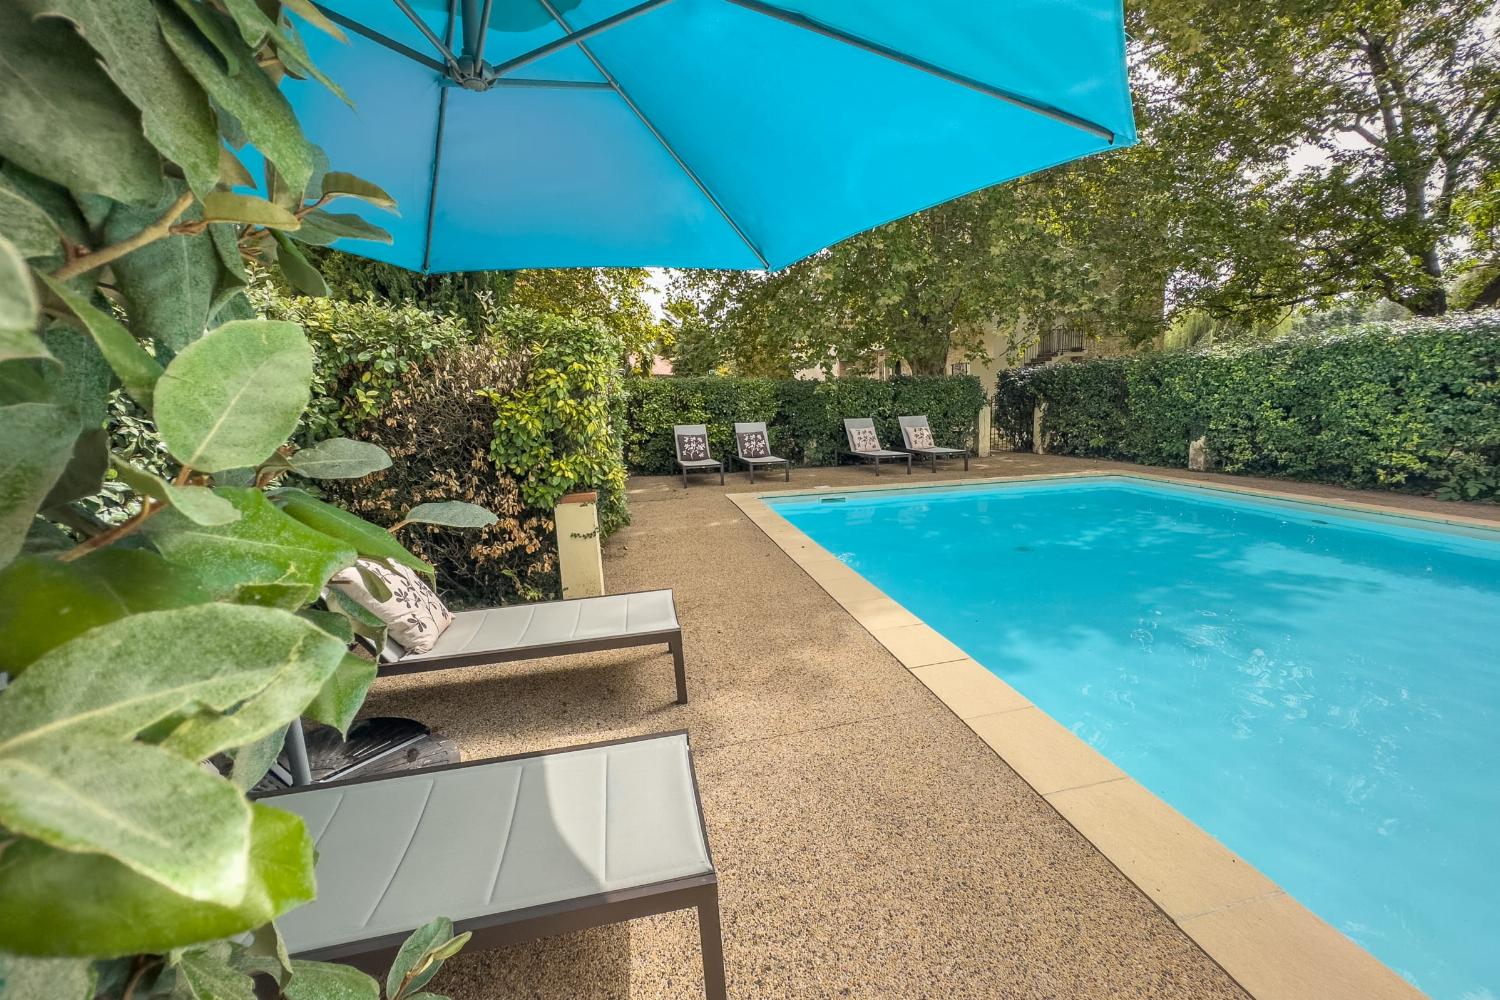 Private pool | Holiday home in Tarn-en-Garonne